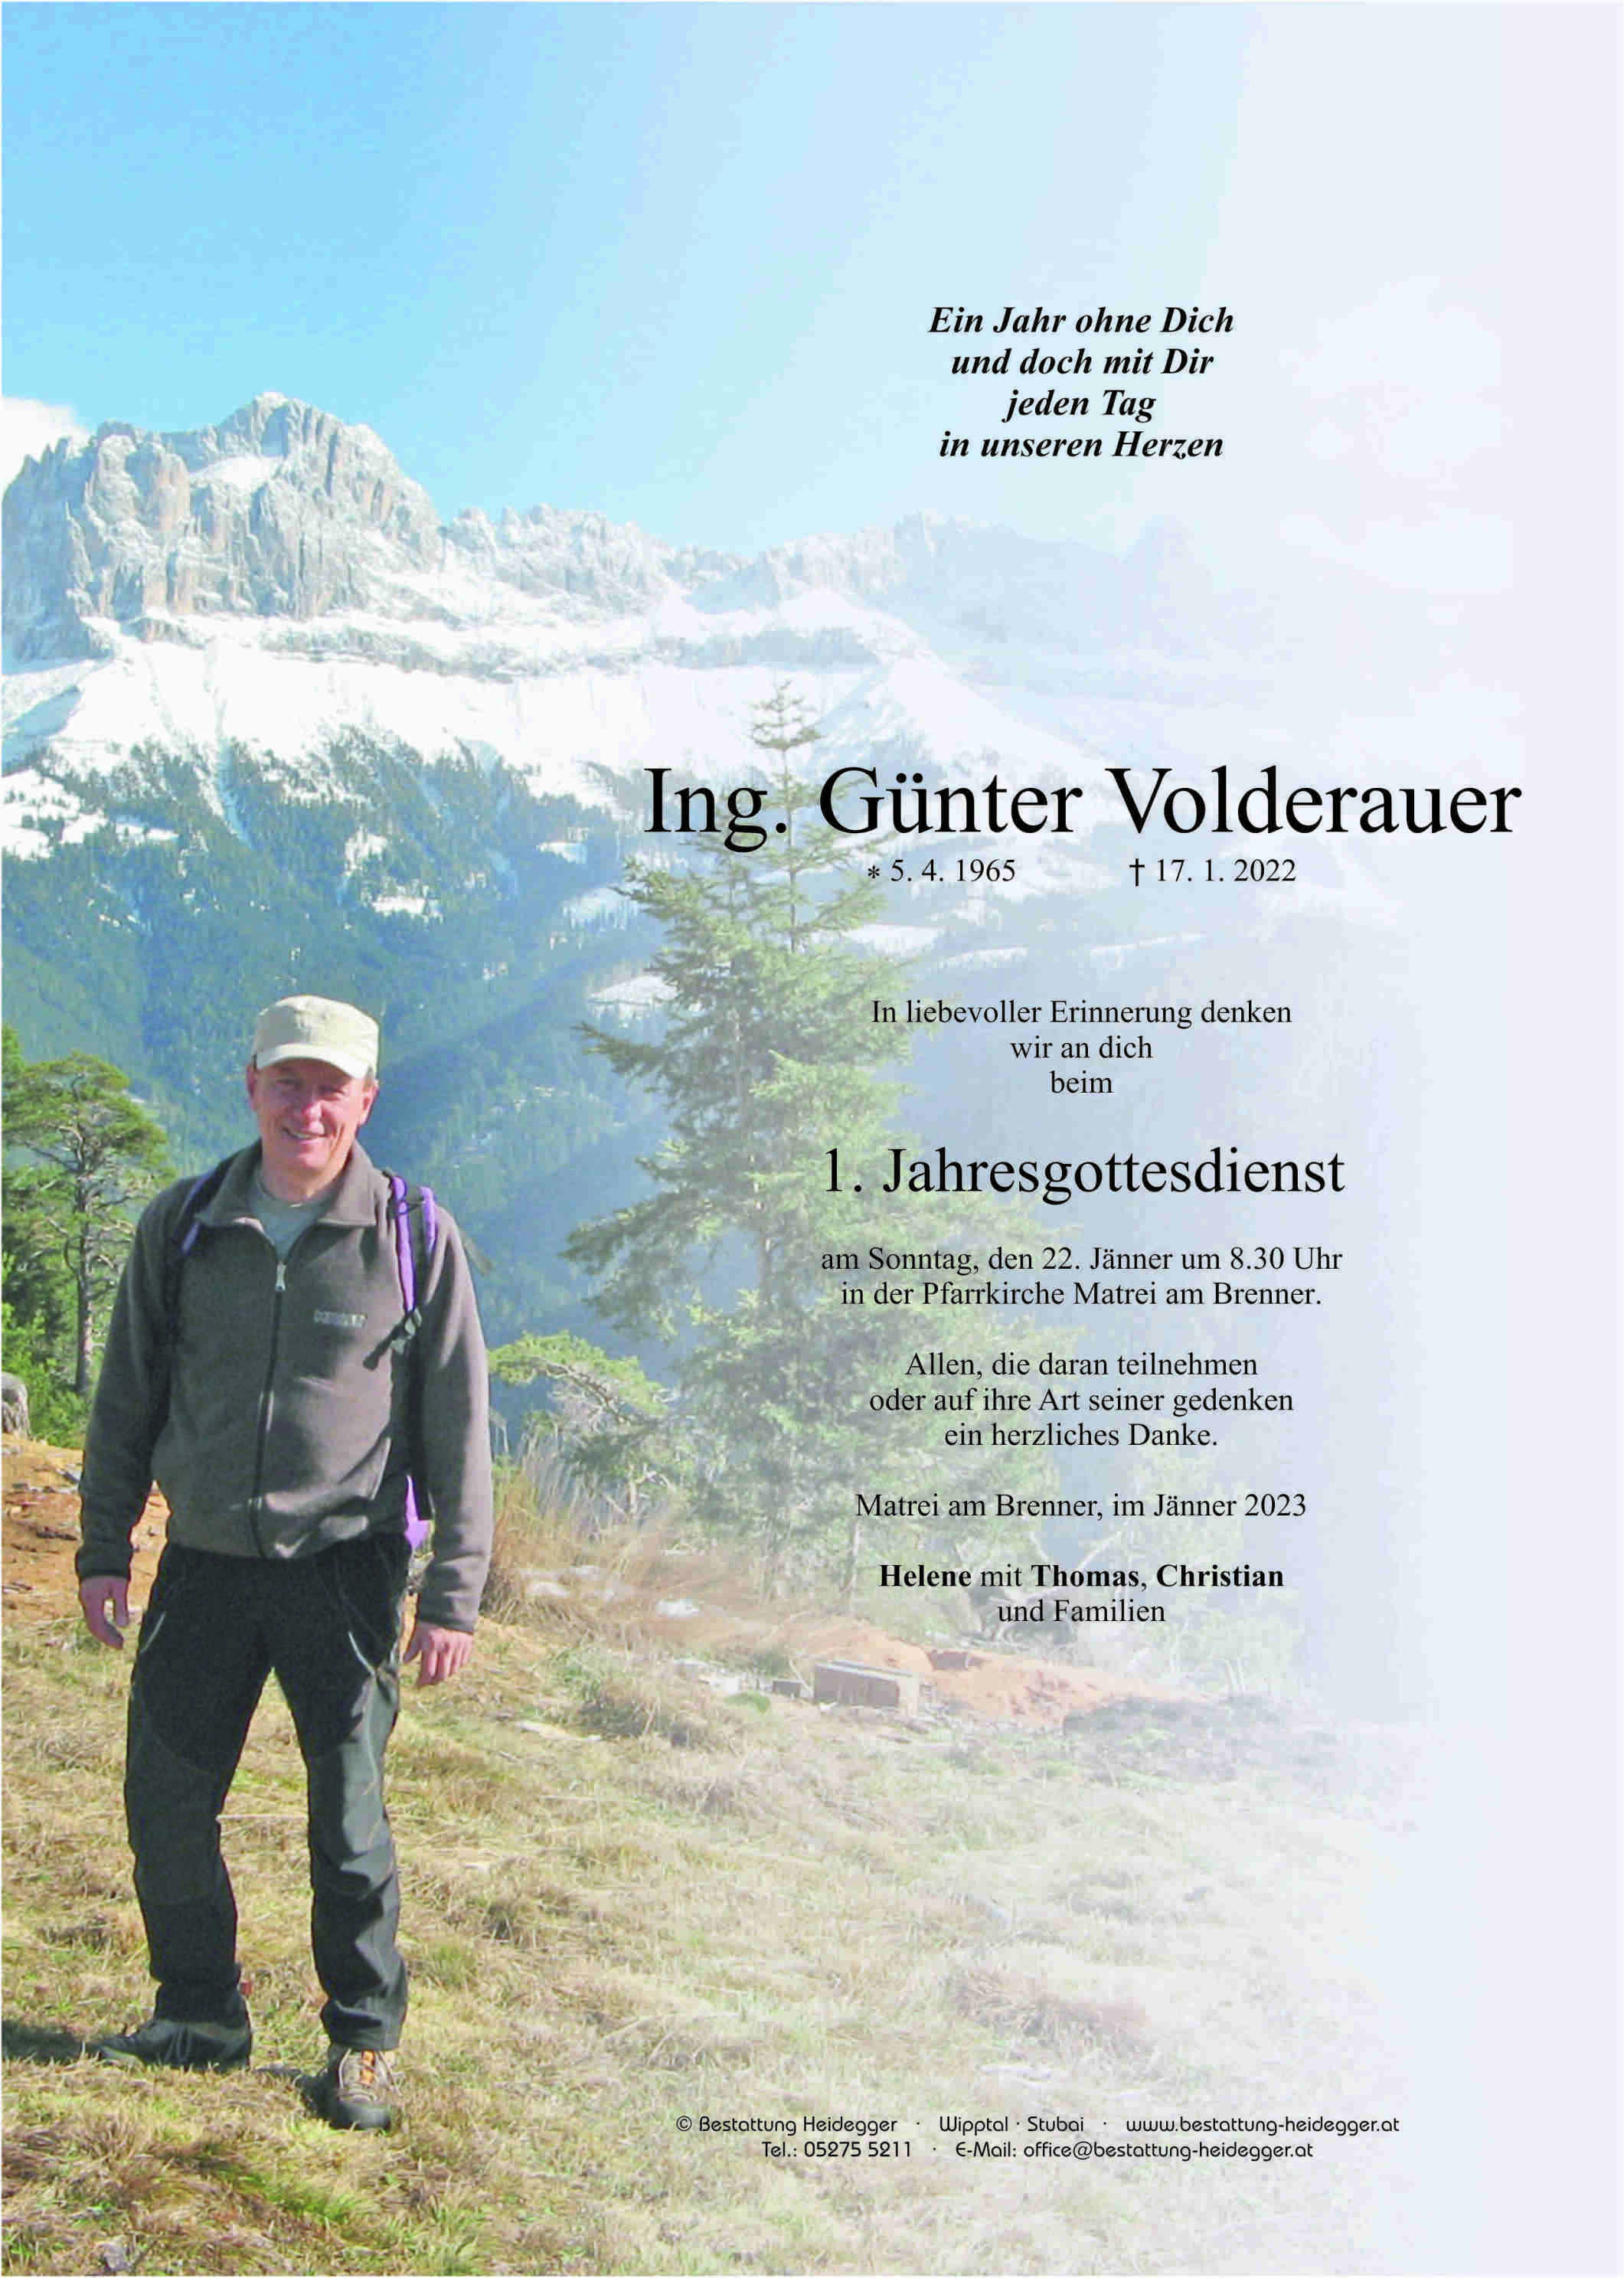 Günter Volderauer